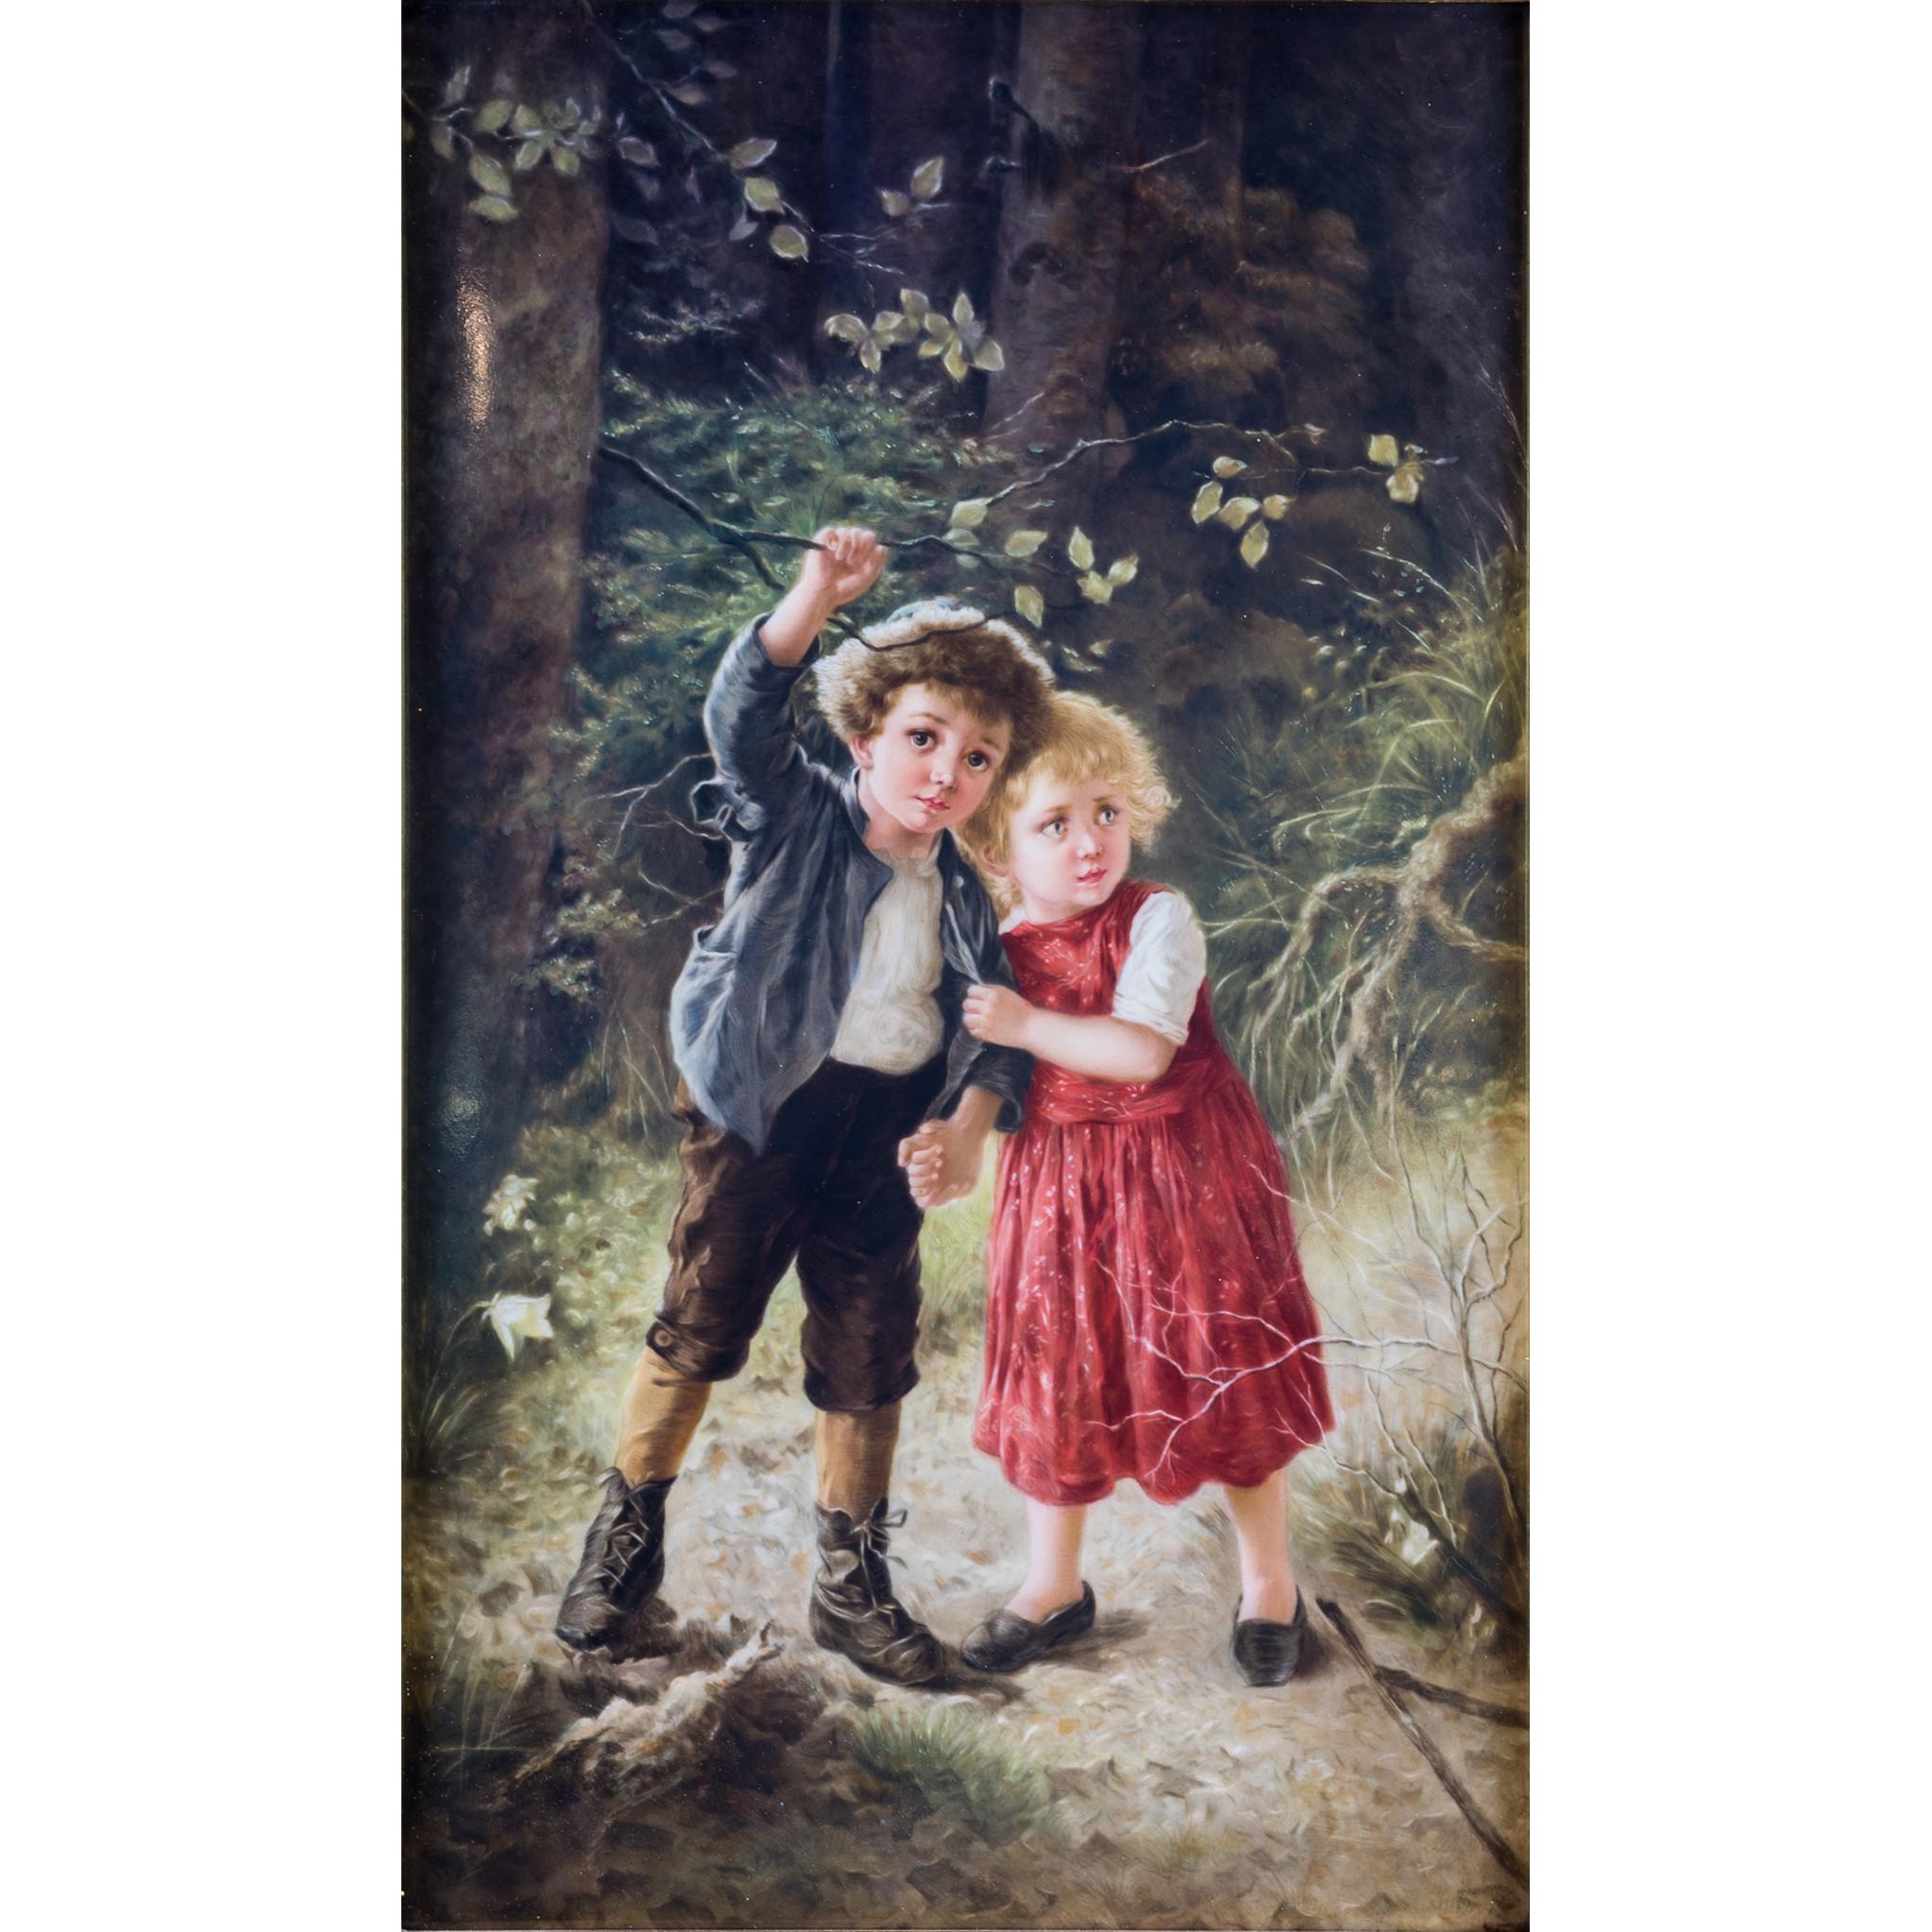 Die rechteckige Plakette ist handbemalt und zeigt zwei Kinder, die sich in einem dichten deutschen Wald verirrt haben.

Herkunft: Deutsch
Datum: 19. Jahrhundert
Abmessungen: (Plaque) 13 in. x 8 in.; (gerahmt) 19 1/2 in. x 14 1/2 in.